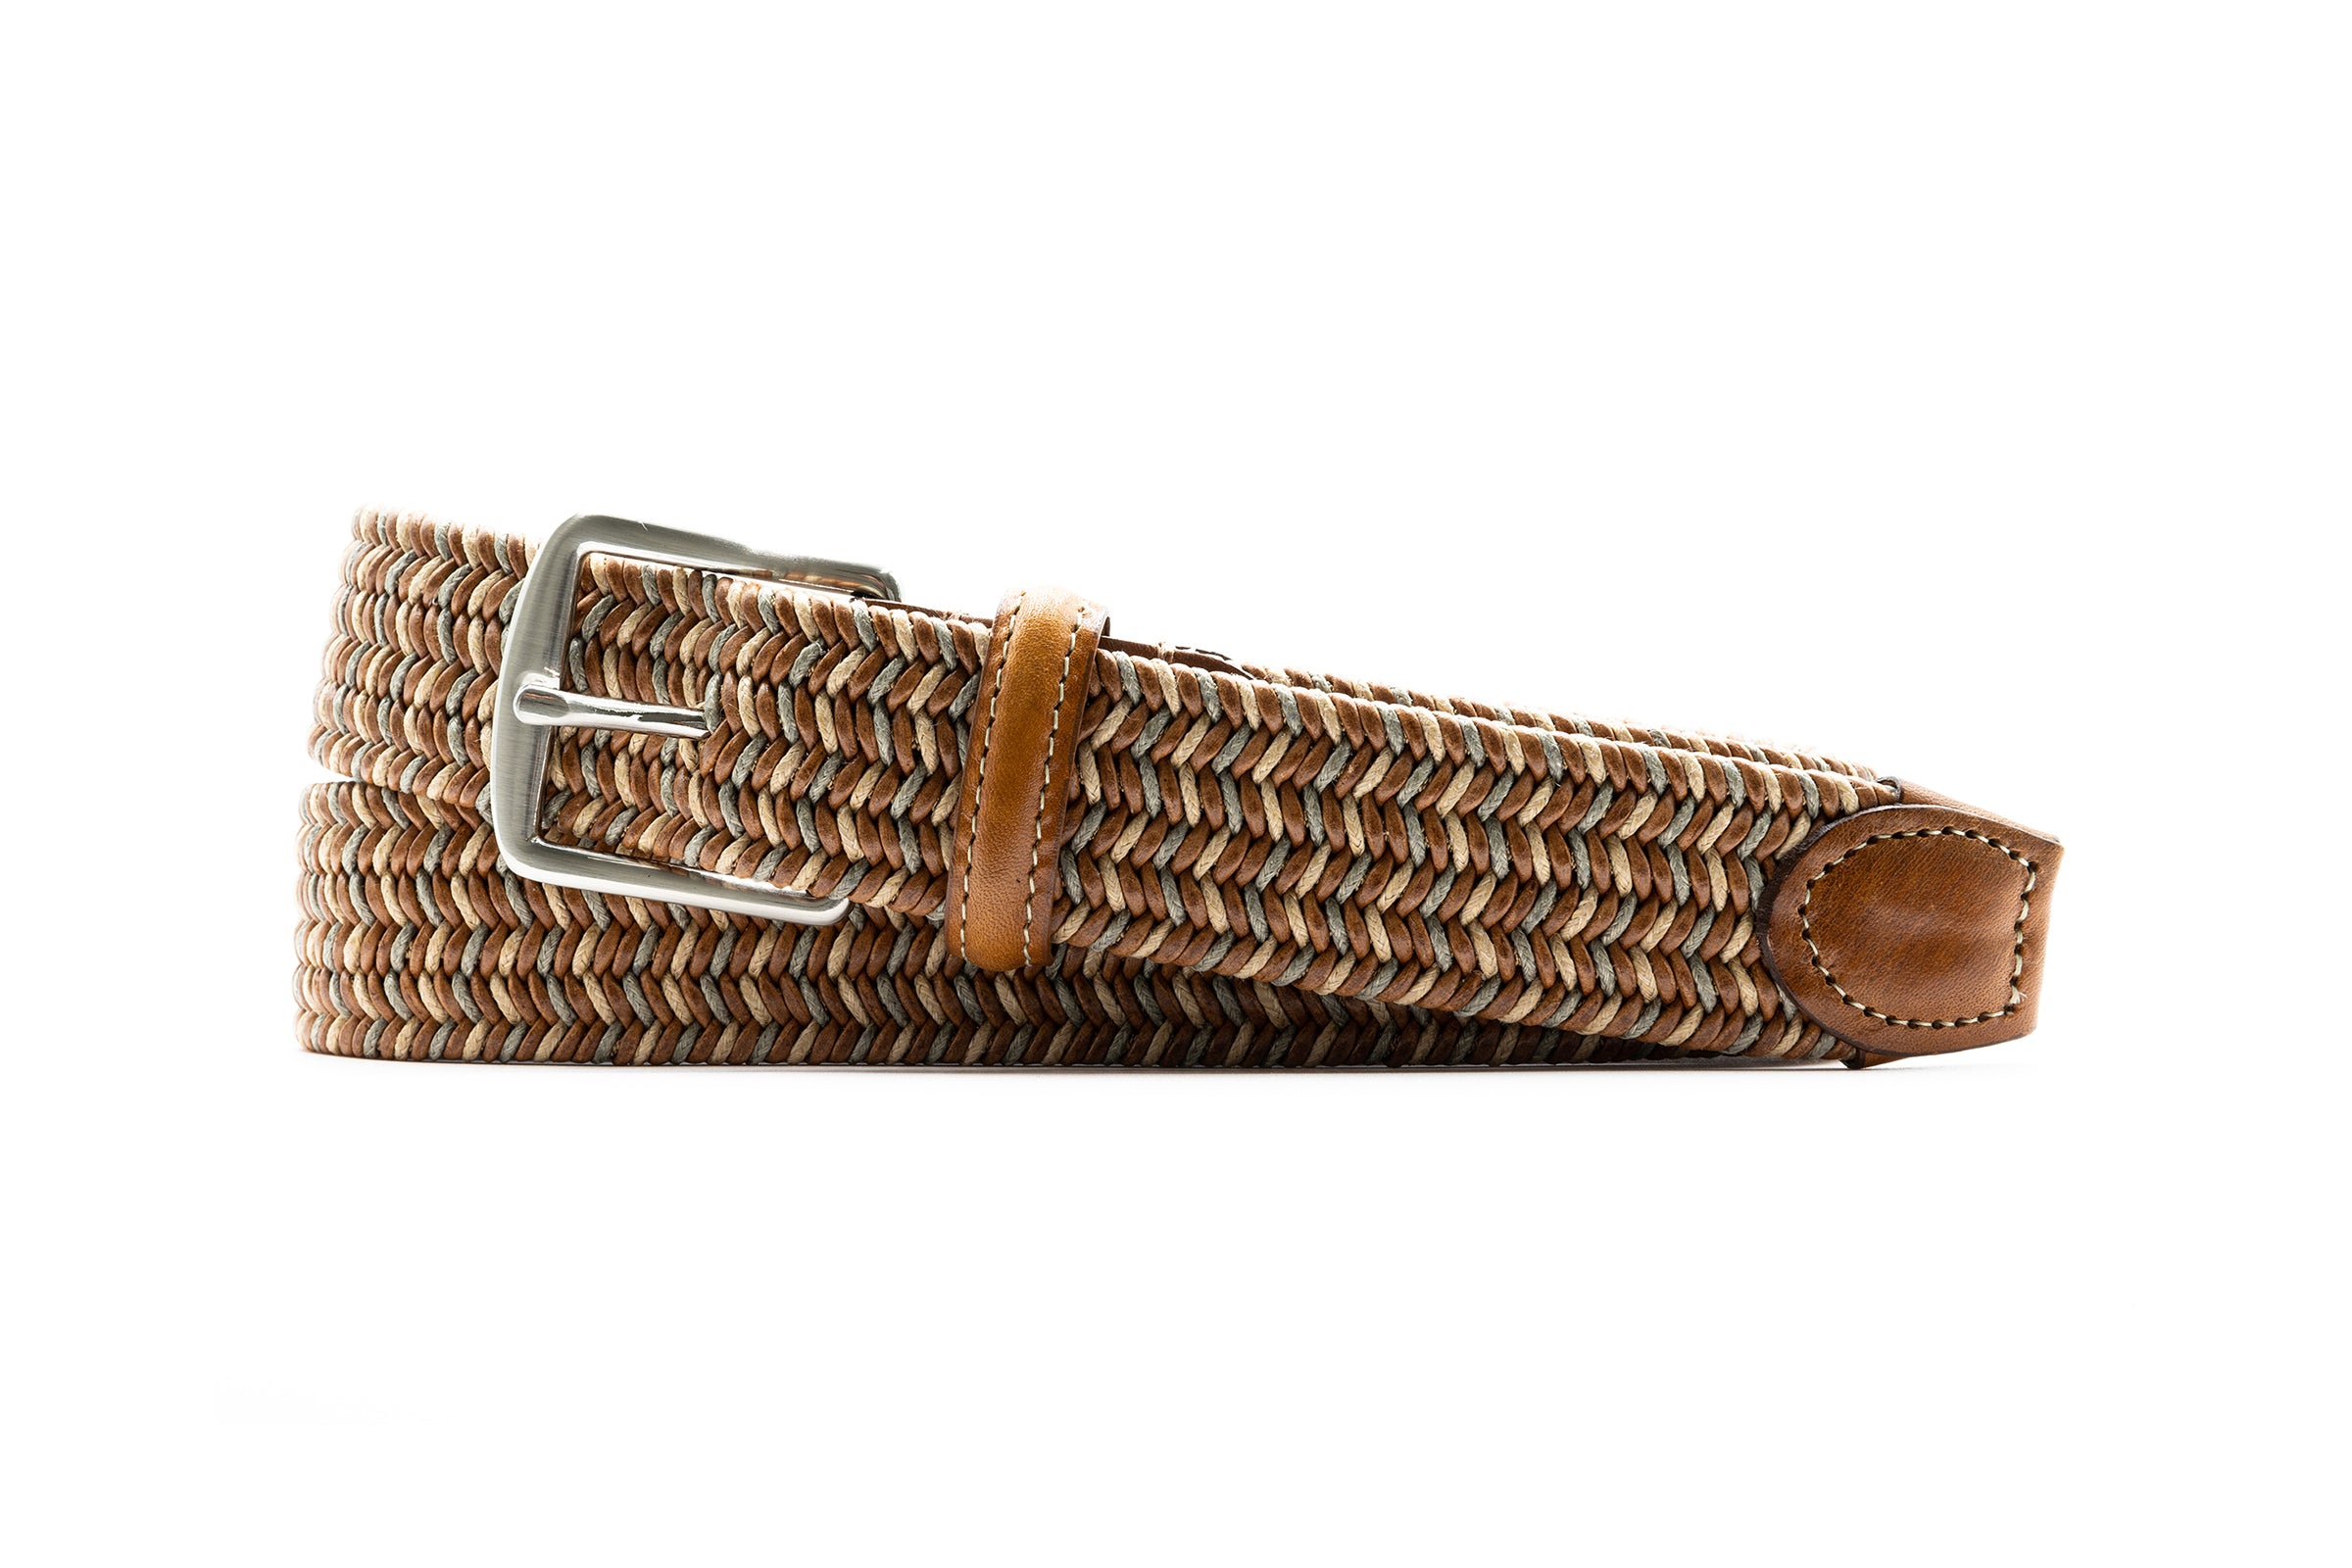 Savannah Braided Italian Leather and Linen Elastic Belt - Saddle Multi